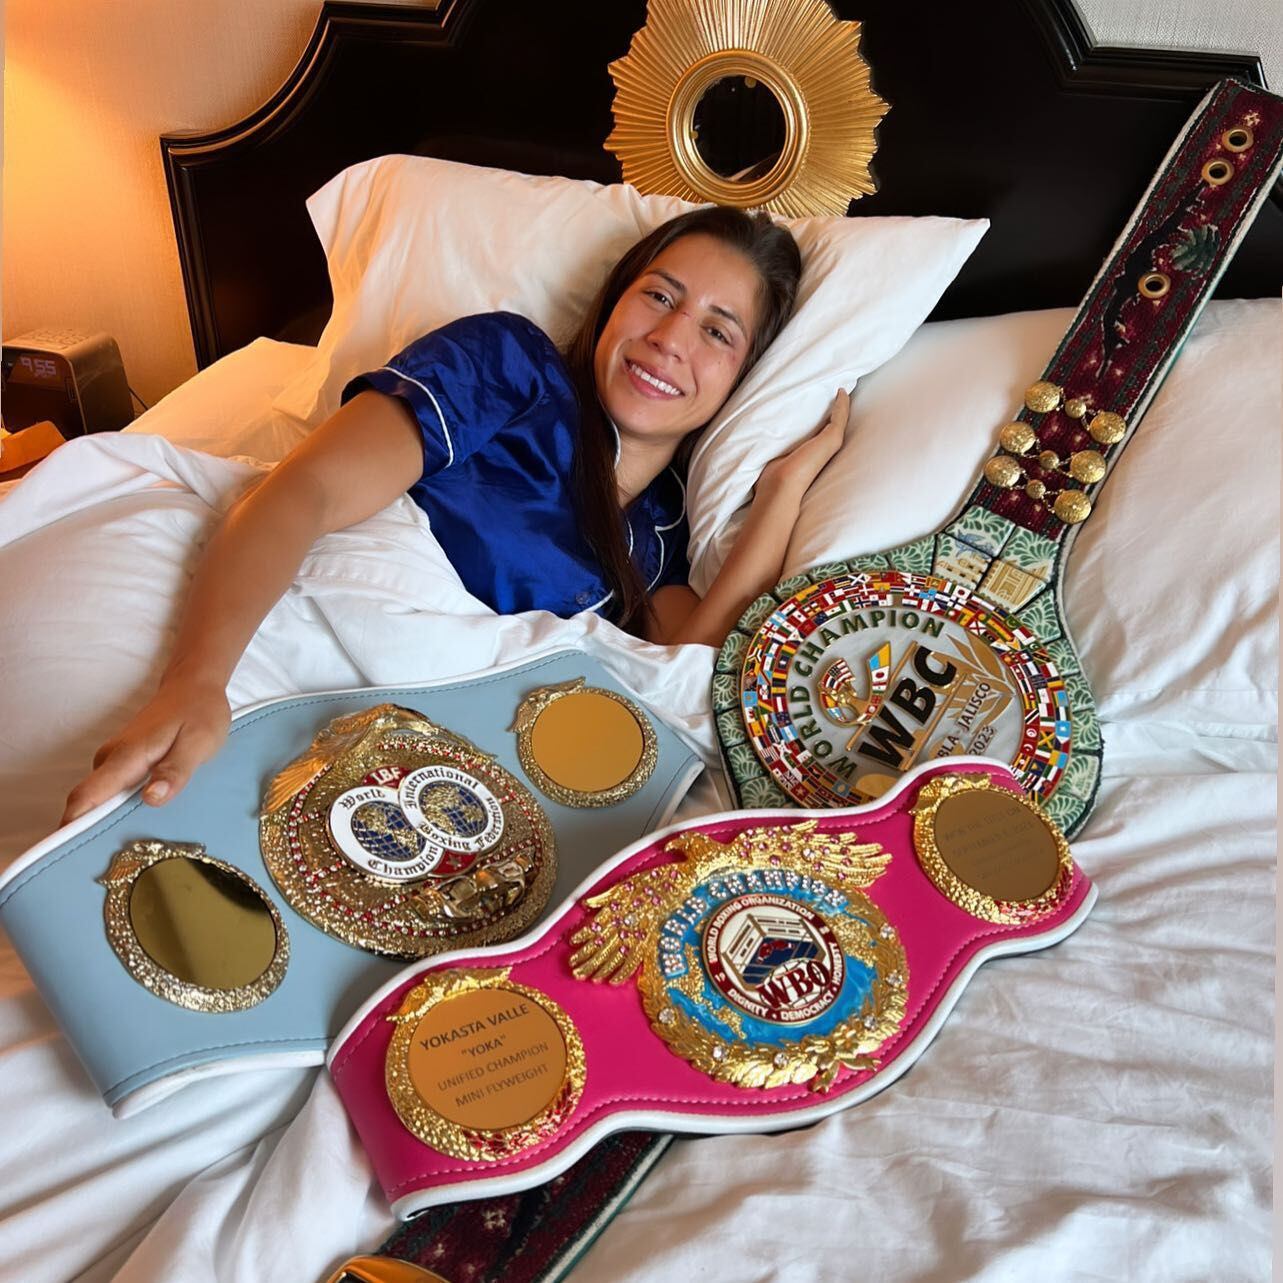 Yokasta Valle tuvo un despertar de  campeona este domingo al retener sus títulos mundiales, luego de la pelea del sábado ante María Santizo de Guatemala. Tomado de Facebook